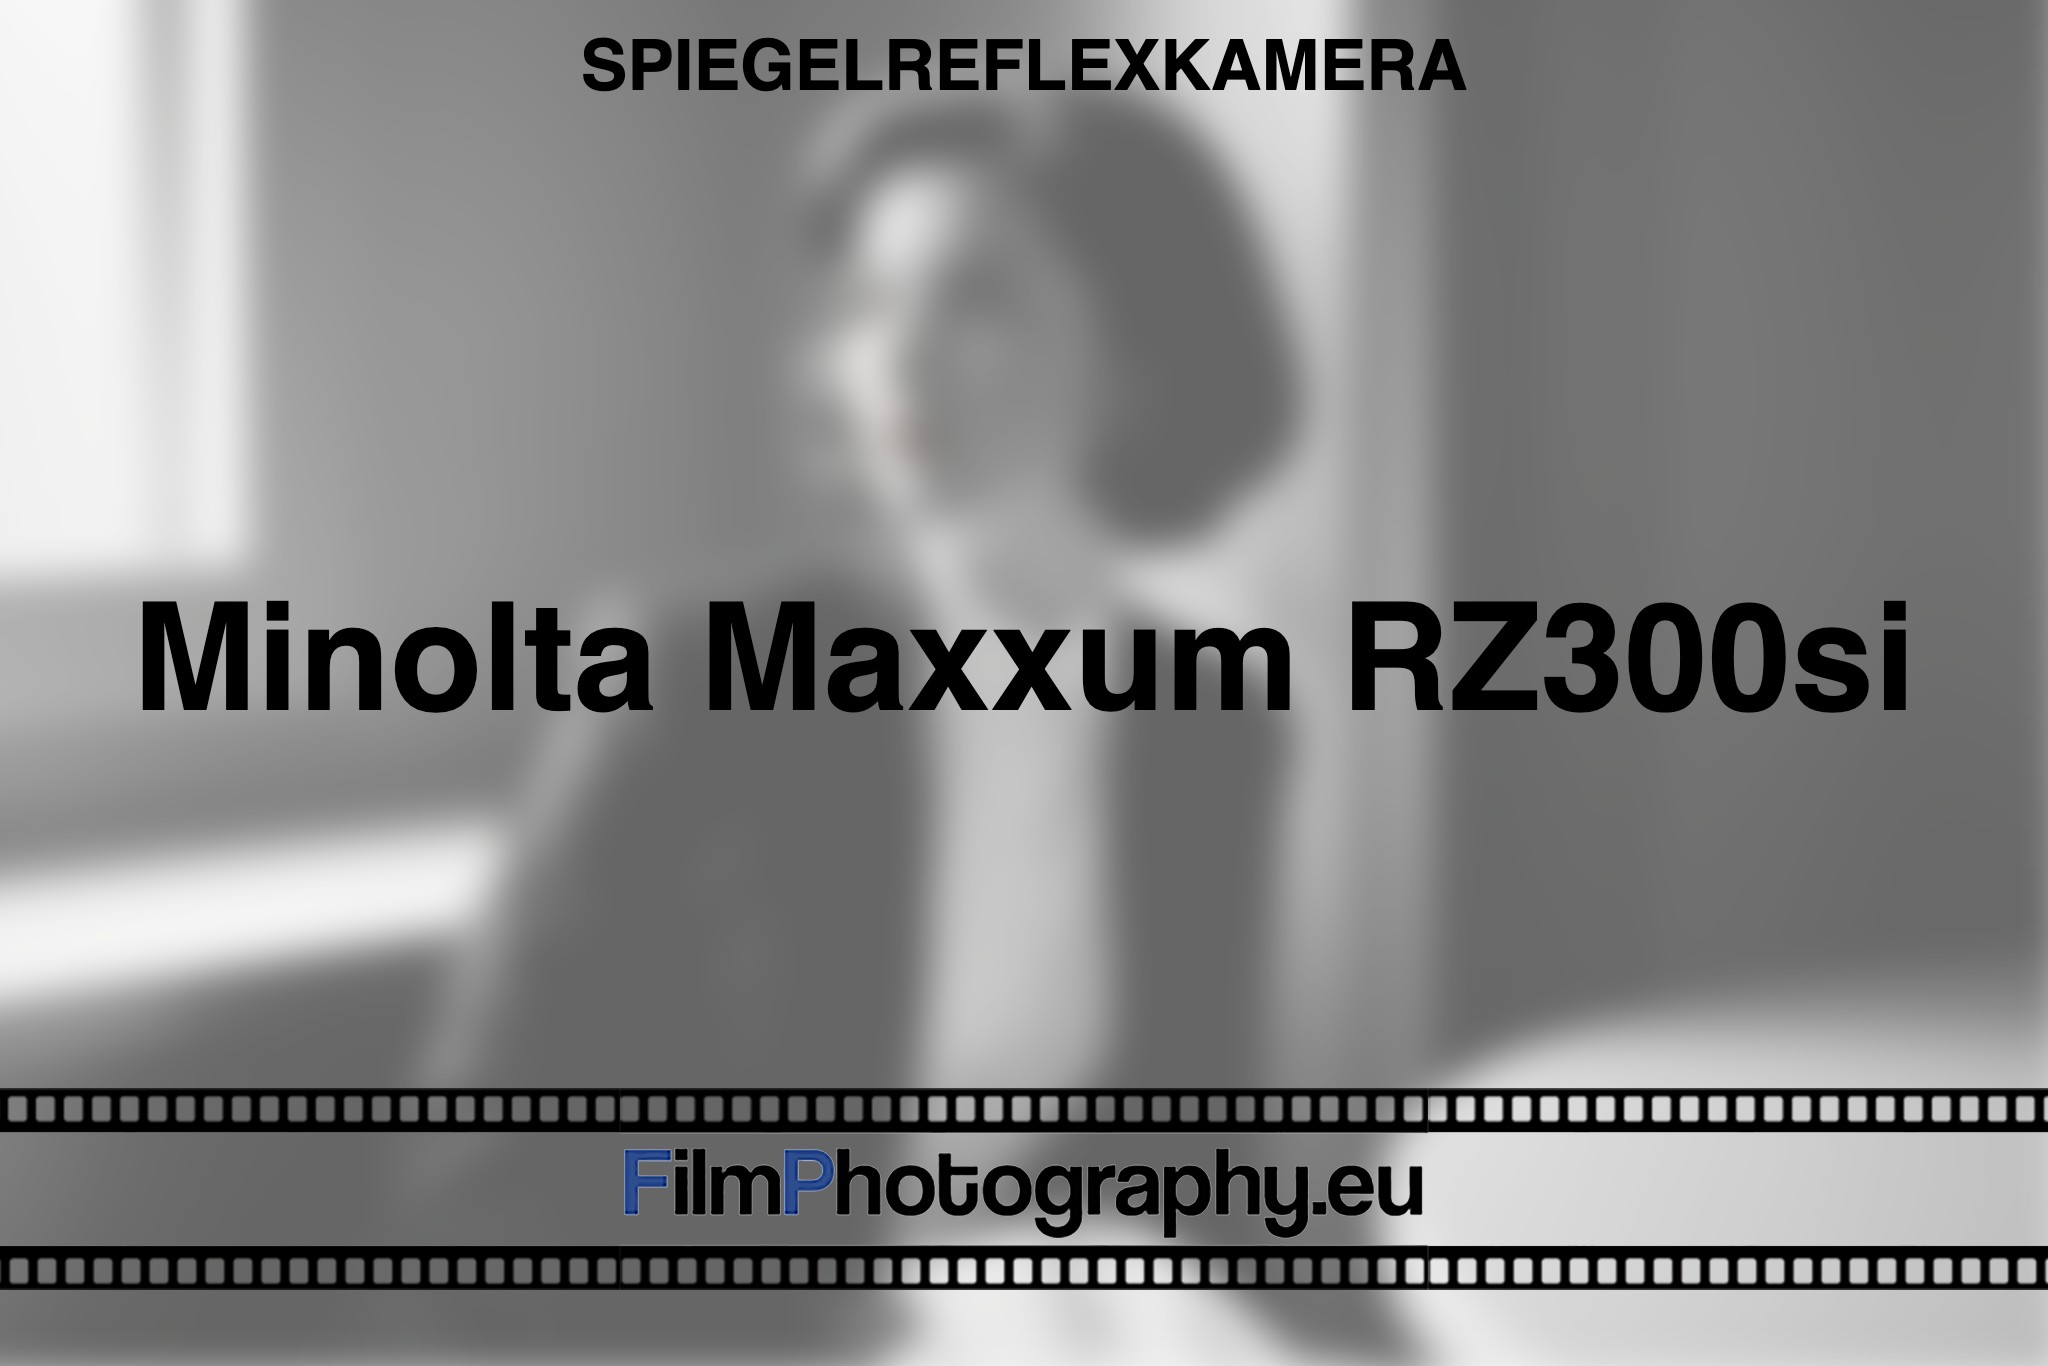 minolta-maxxum-rz300si-spiegelreflexkamera-bnv